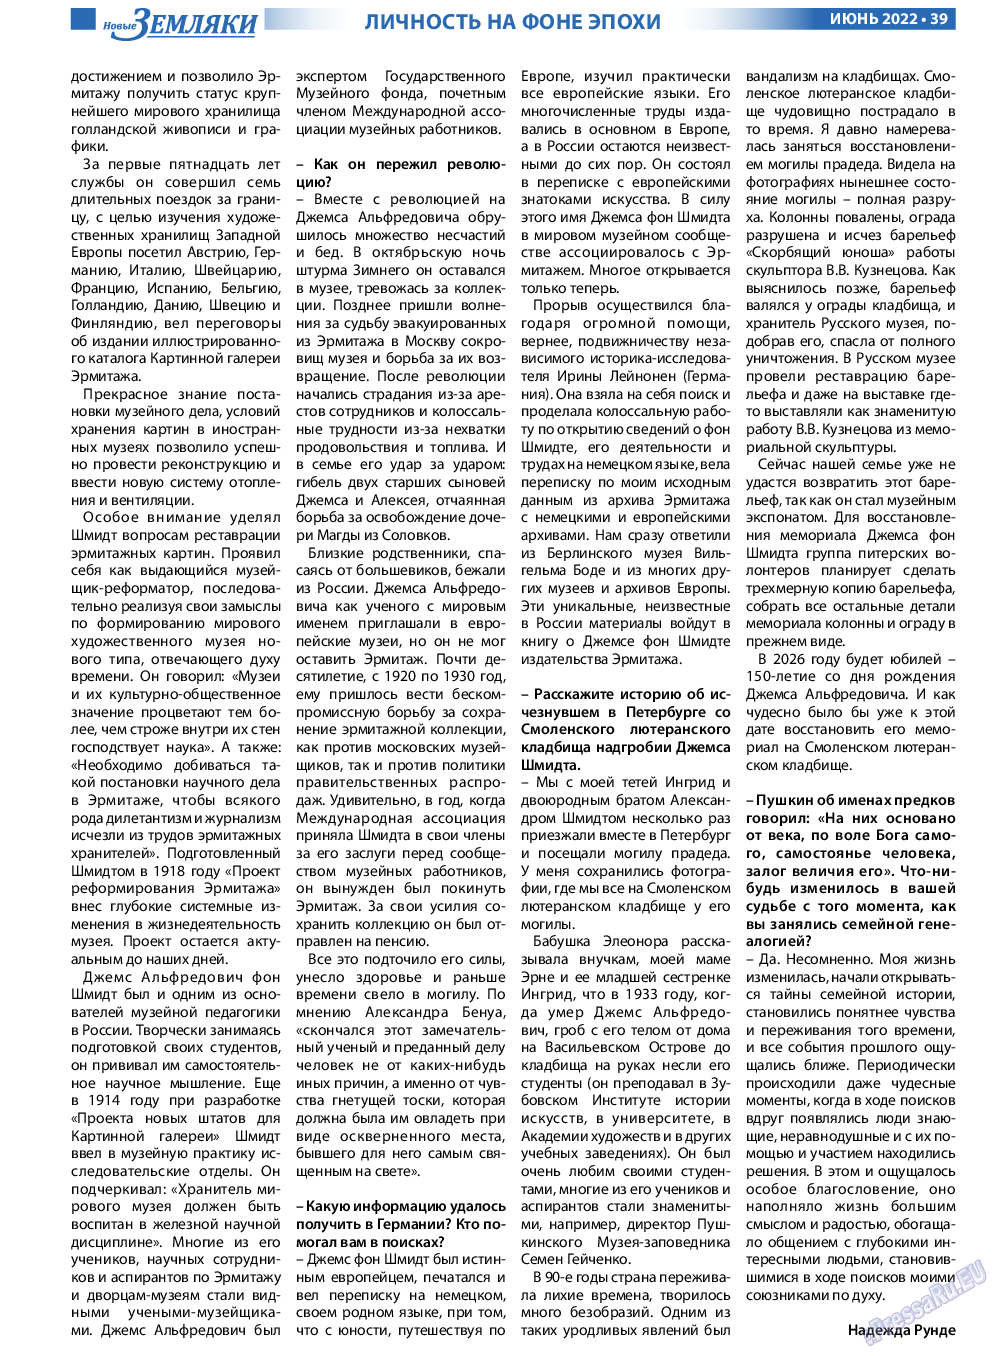 Новые Земляки, газета. 2022 №6 стр.39